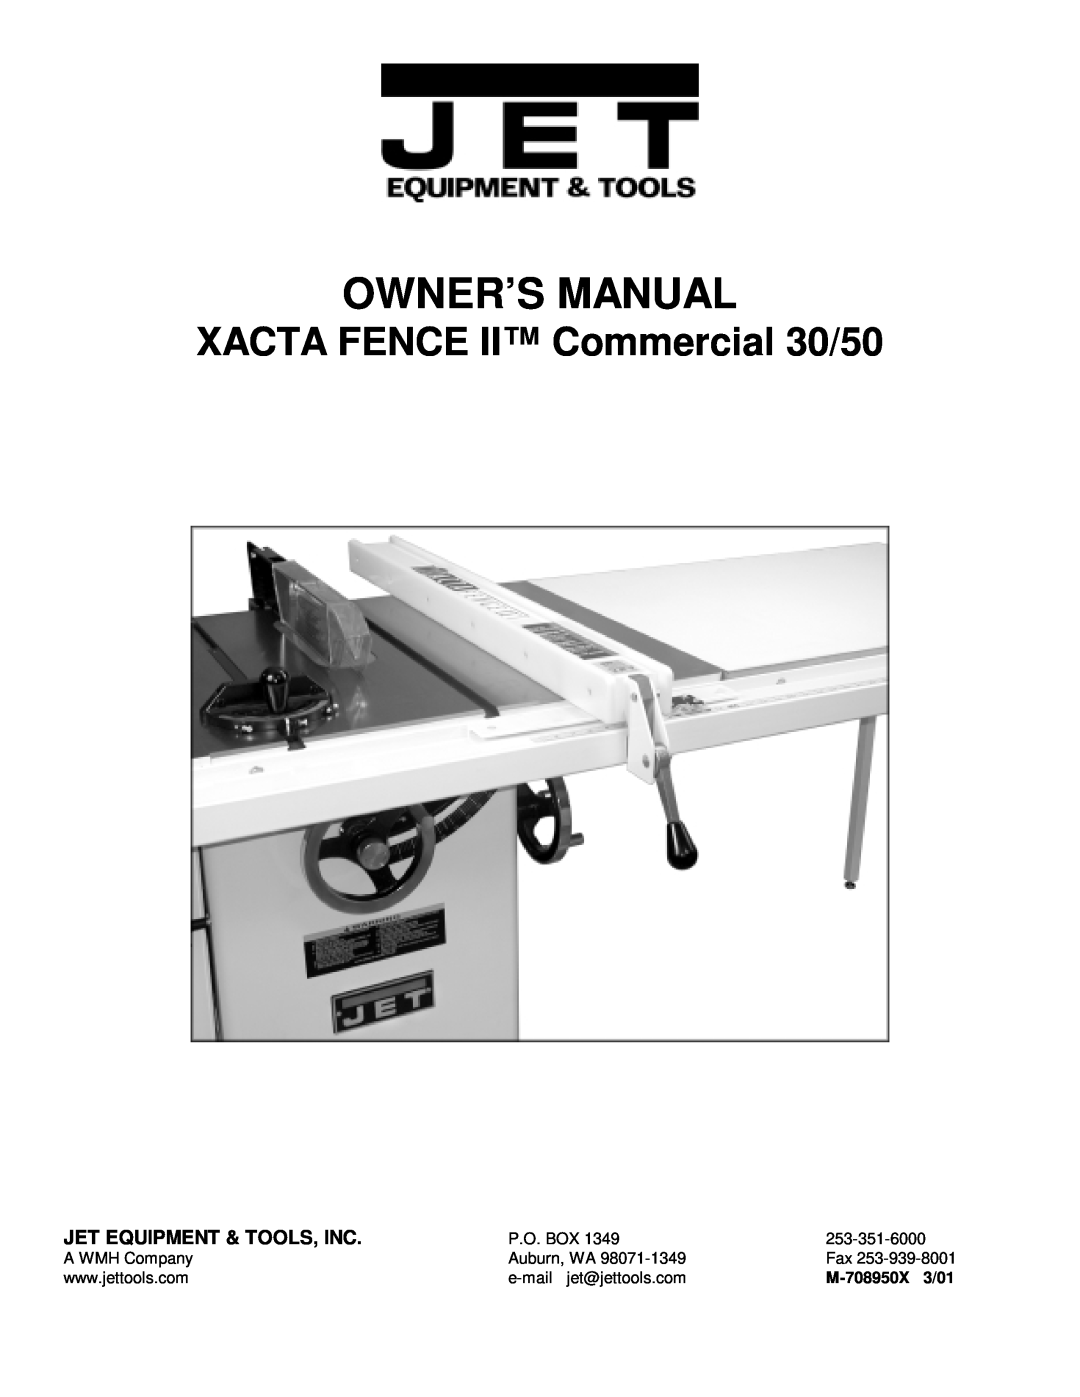 Jet Tools owner manual Jet Equipment & Tools, Inc, Owner’S Manual, XACTA FENCE II Commercial 30/50, M-708950X 3/01 